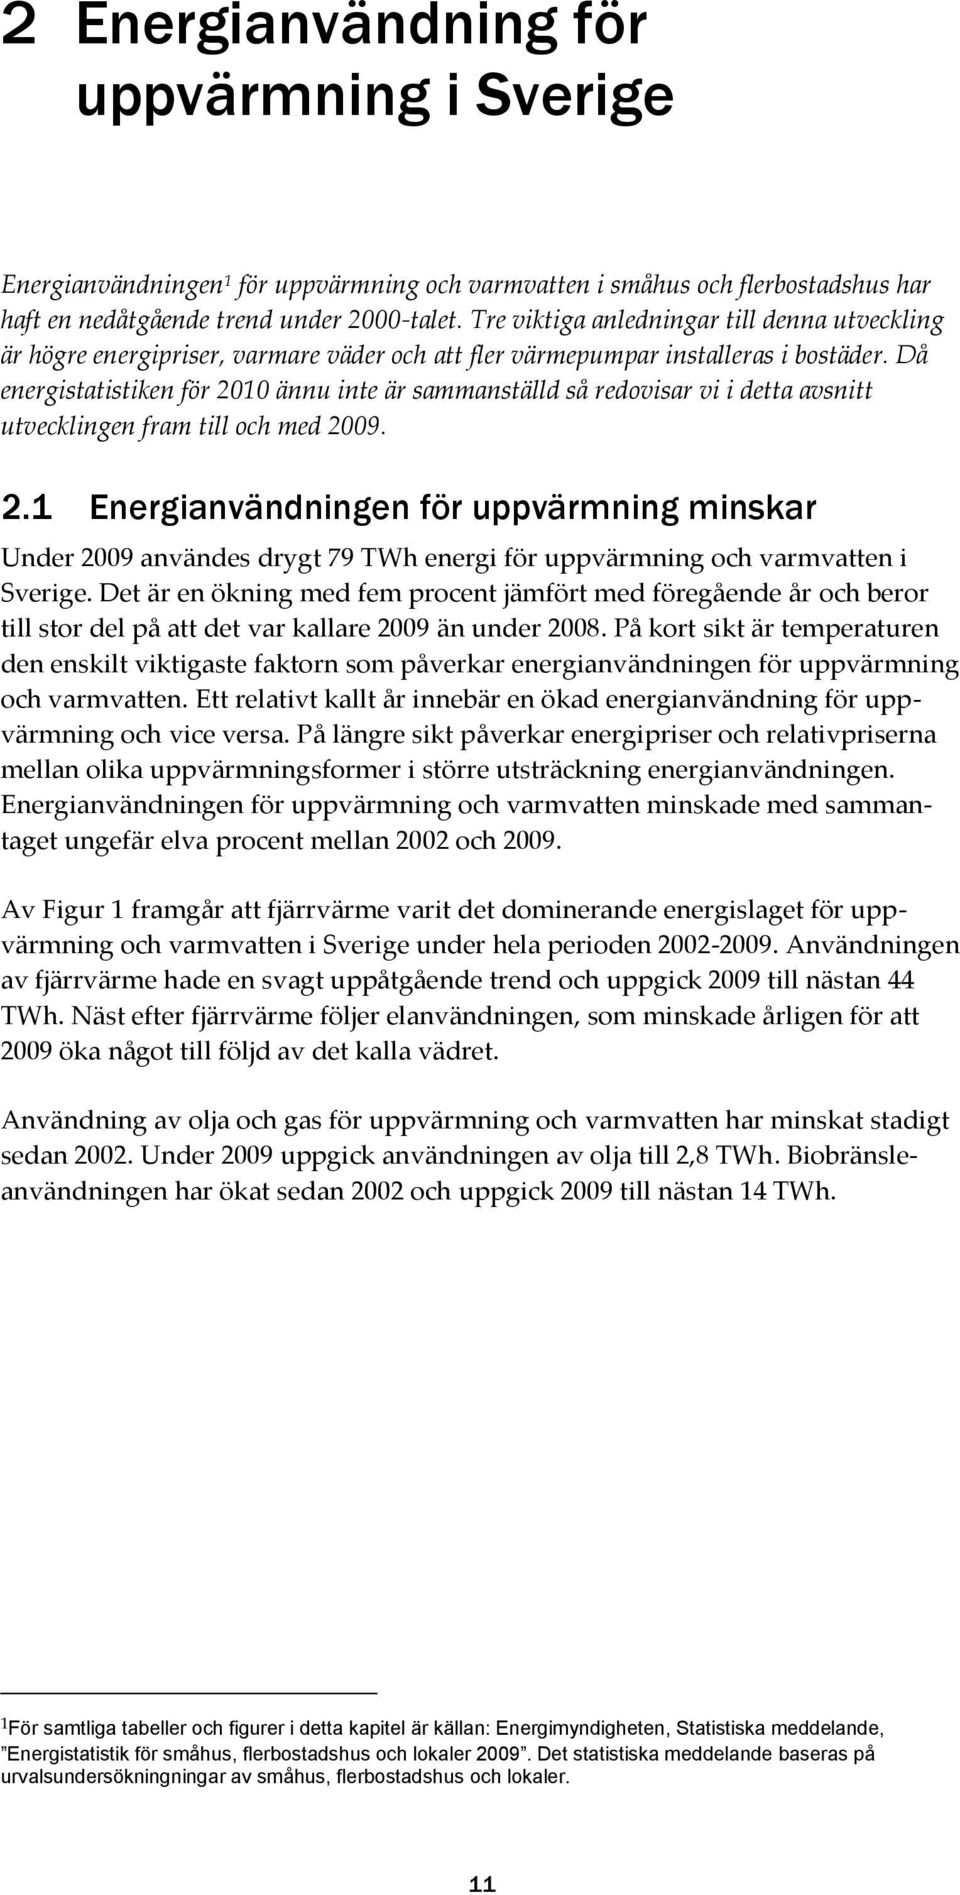 Då energistatistiken för 2010 ännu inte är sammanställd så redovisar vi i detta avsnitt utvecklingen fram till och med 2009. 2.1 Energianvändningen för uppvärmning minskar Under 2009 användes drygt 79 TWh energi för uppvärmning och varmvatten i Sverige.